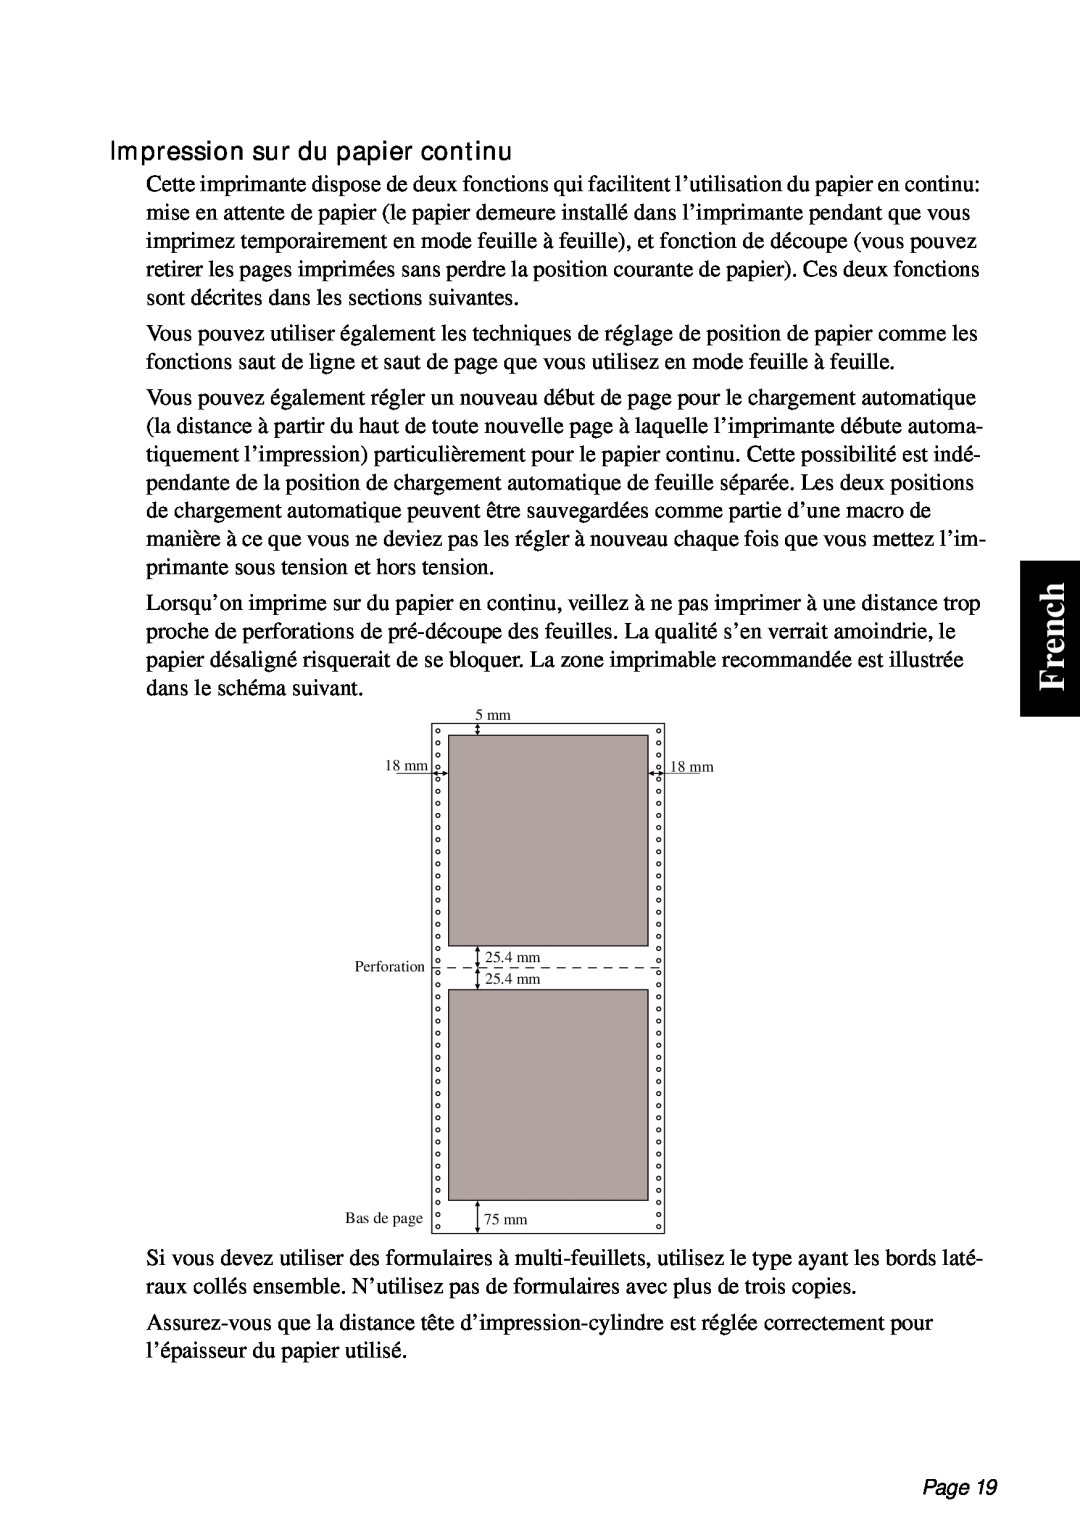 Star Micronics PT-10Q user manual French, Impression sur du papier continu, Page 